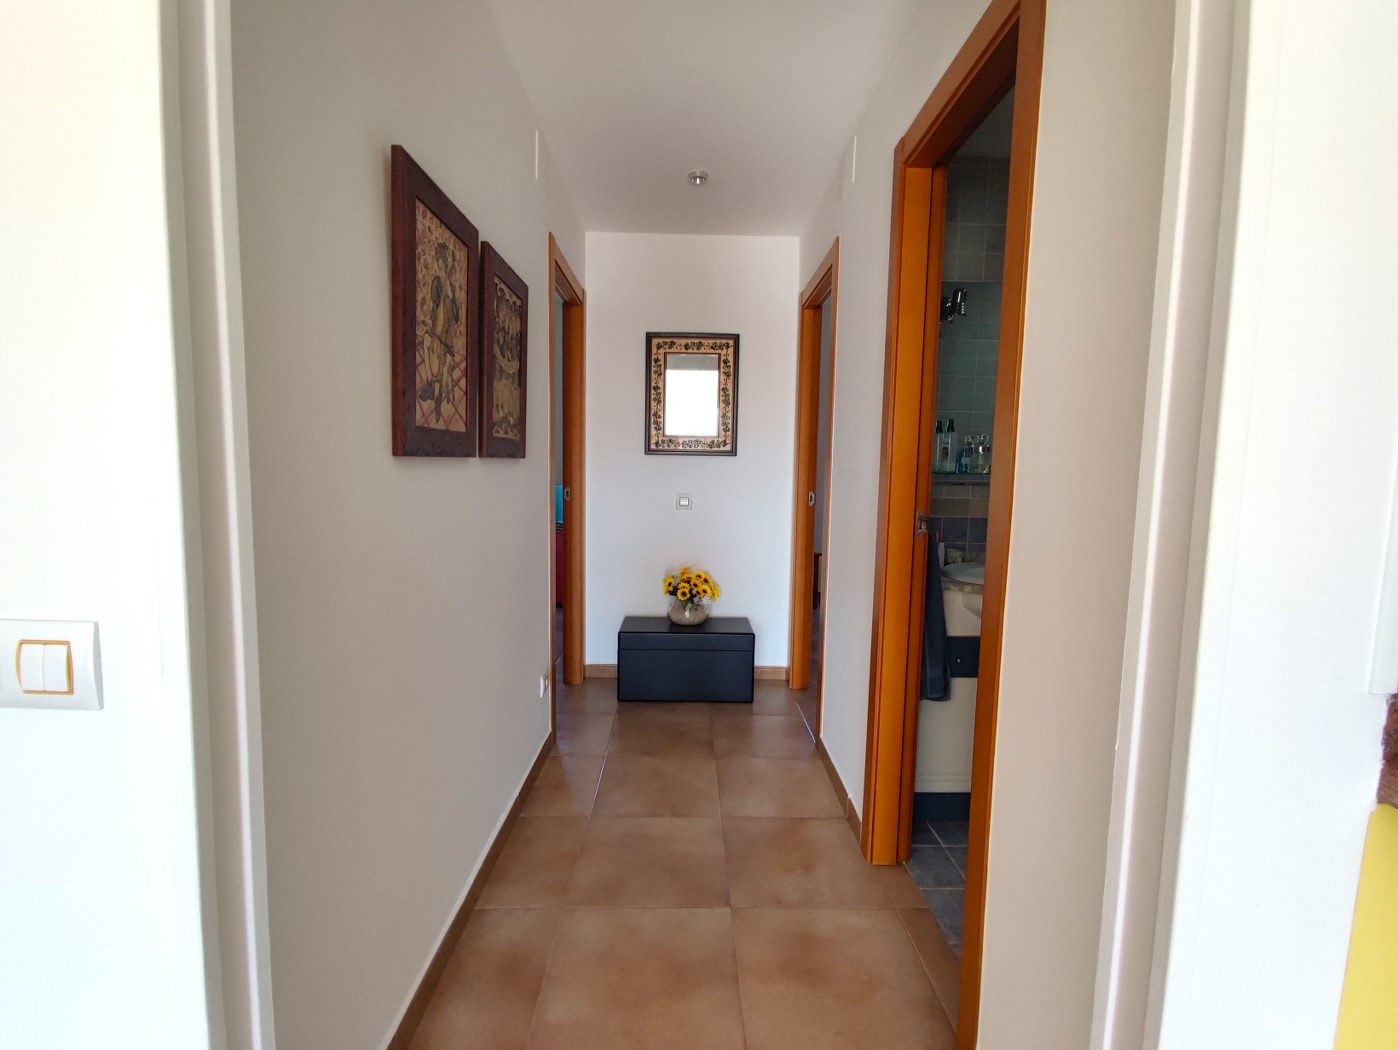 Soleado apartamento de 3 dormitorios y piscina comunitaria en Els Poblets, Costa Blanca